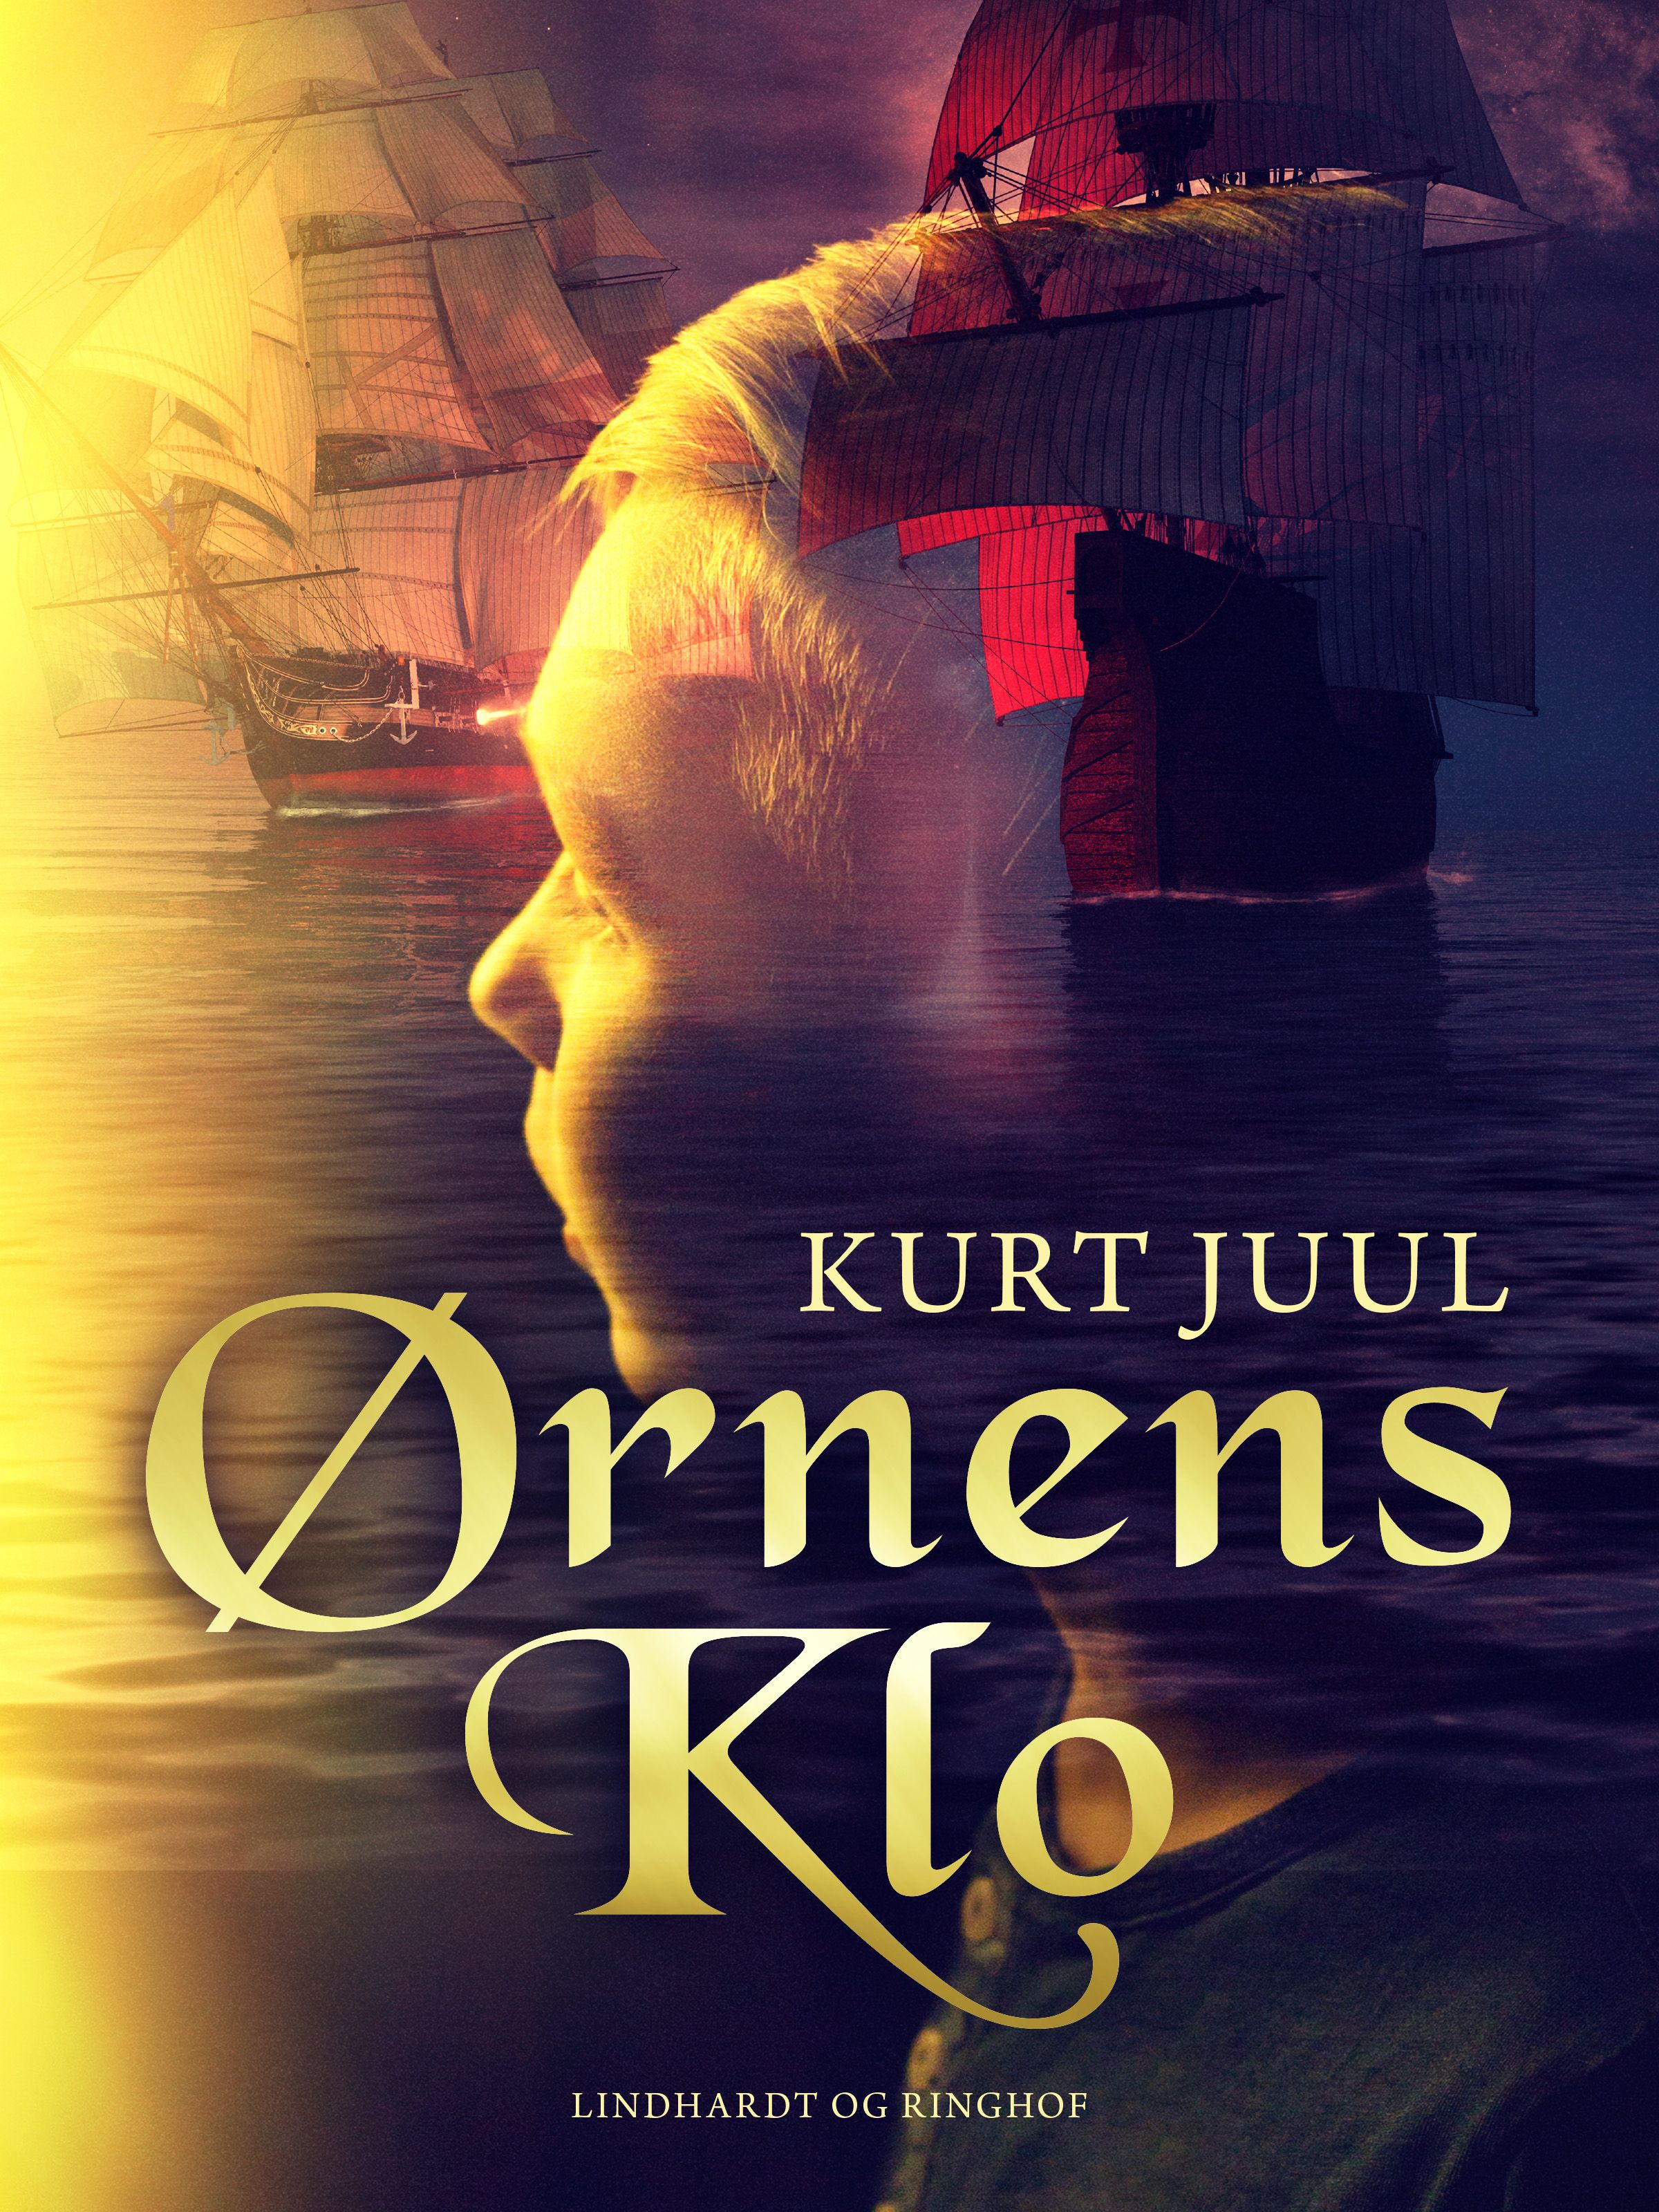 Ørnens klo, e-bog af Kurt Juul